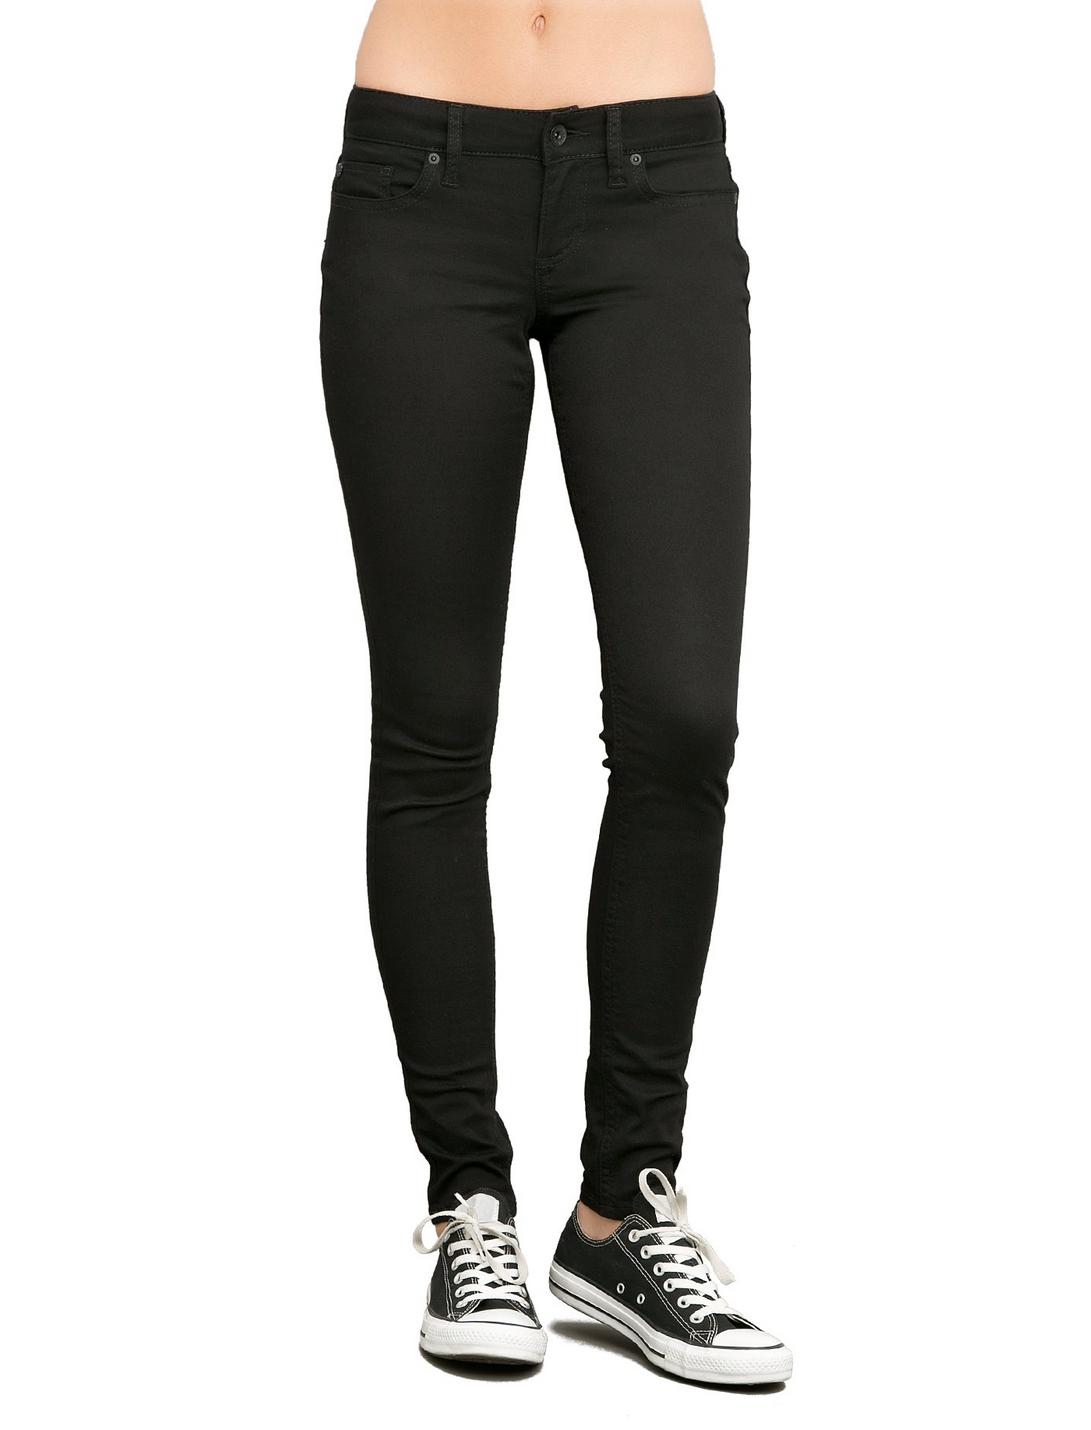 LOVEsick Black Skinny Jeans, BLACK, hi-res